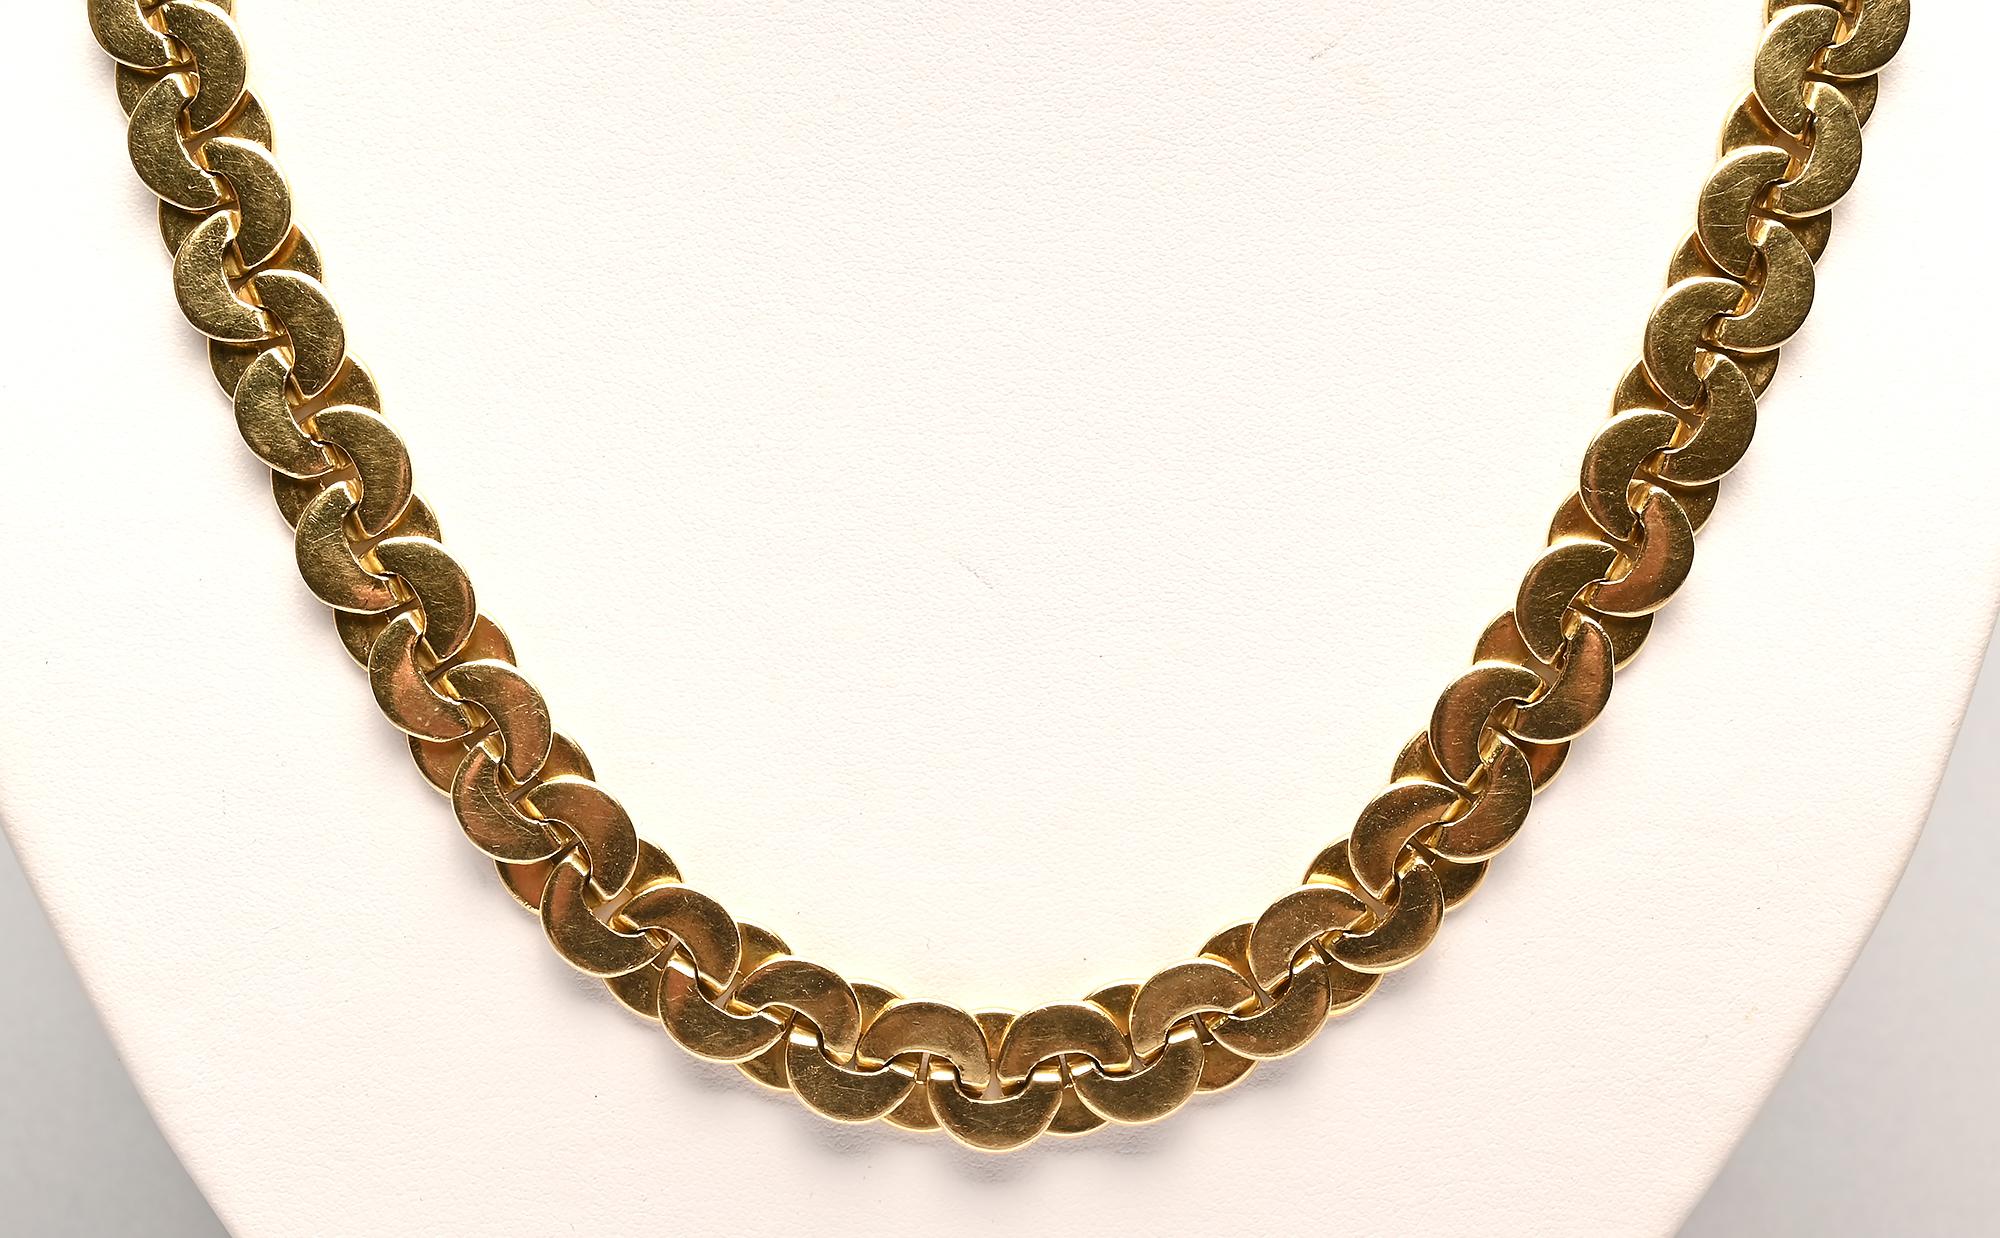 Long collier en or 18 carats de Buccellati avec une finition différente de chaque côté. Une face est brillante et l'autre a une finition légèrement texturée faite de lignes droites extrêmement fines. Les cercles qui se chevauchent sont étroitement